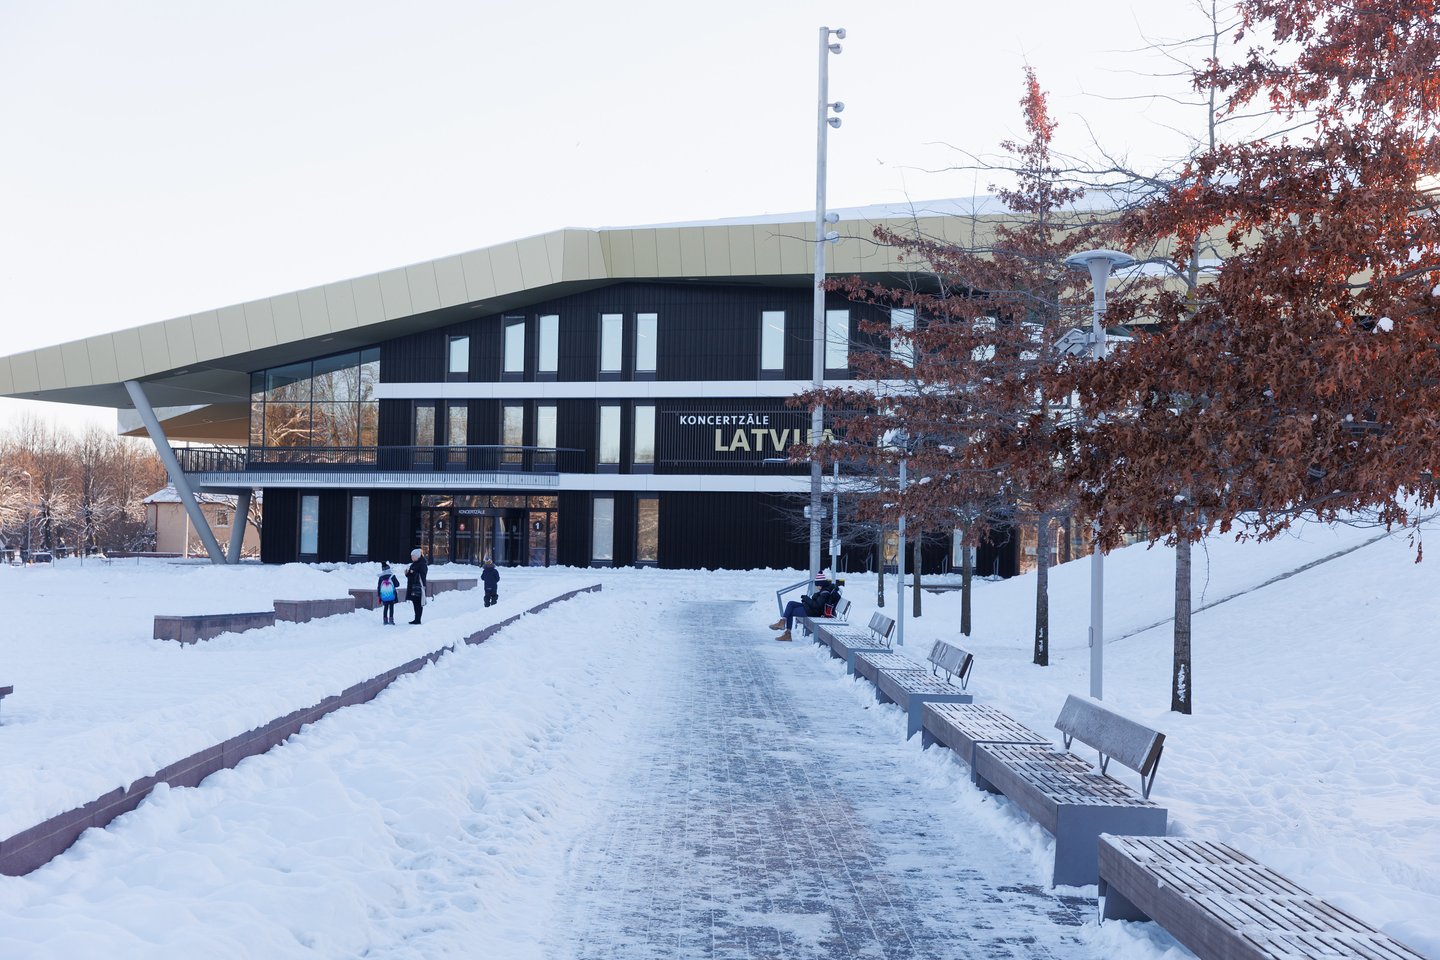  Koncertų salė ir muzikos mokykla "Latvija". 